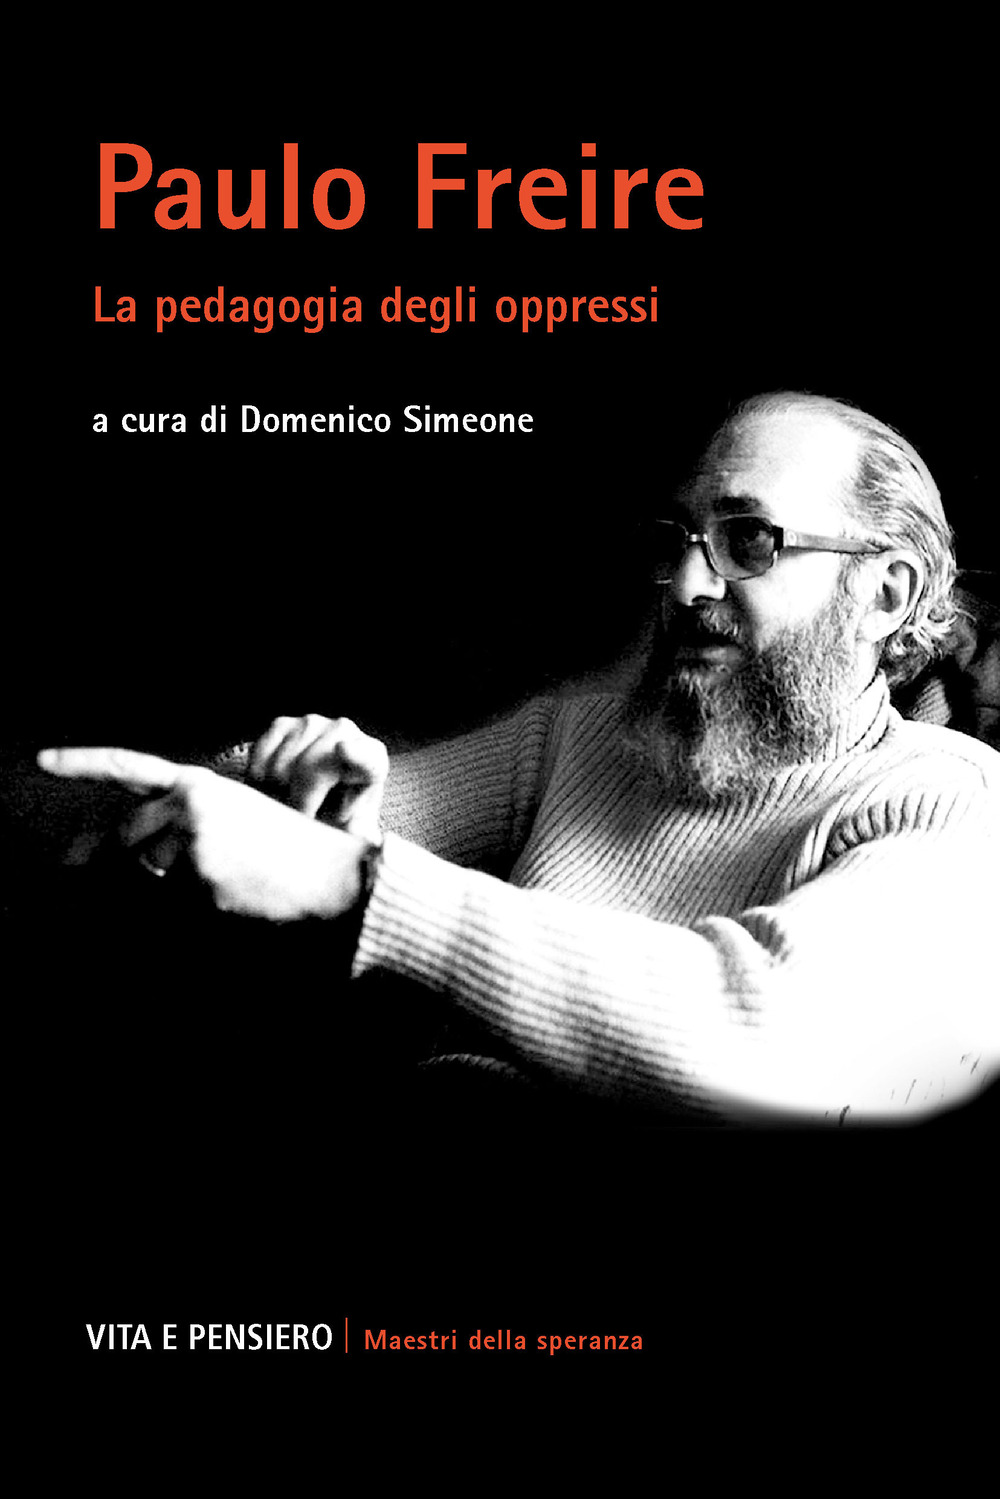 Paulo Freire. La pedagogia degli oppressi